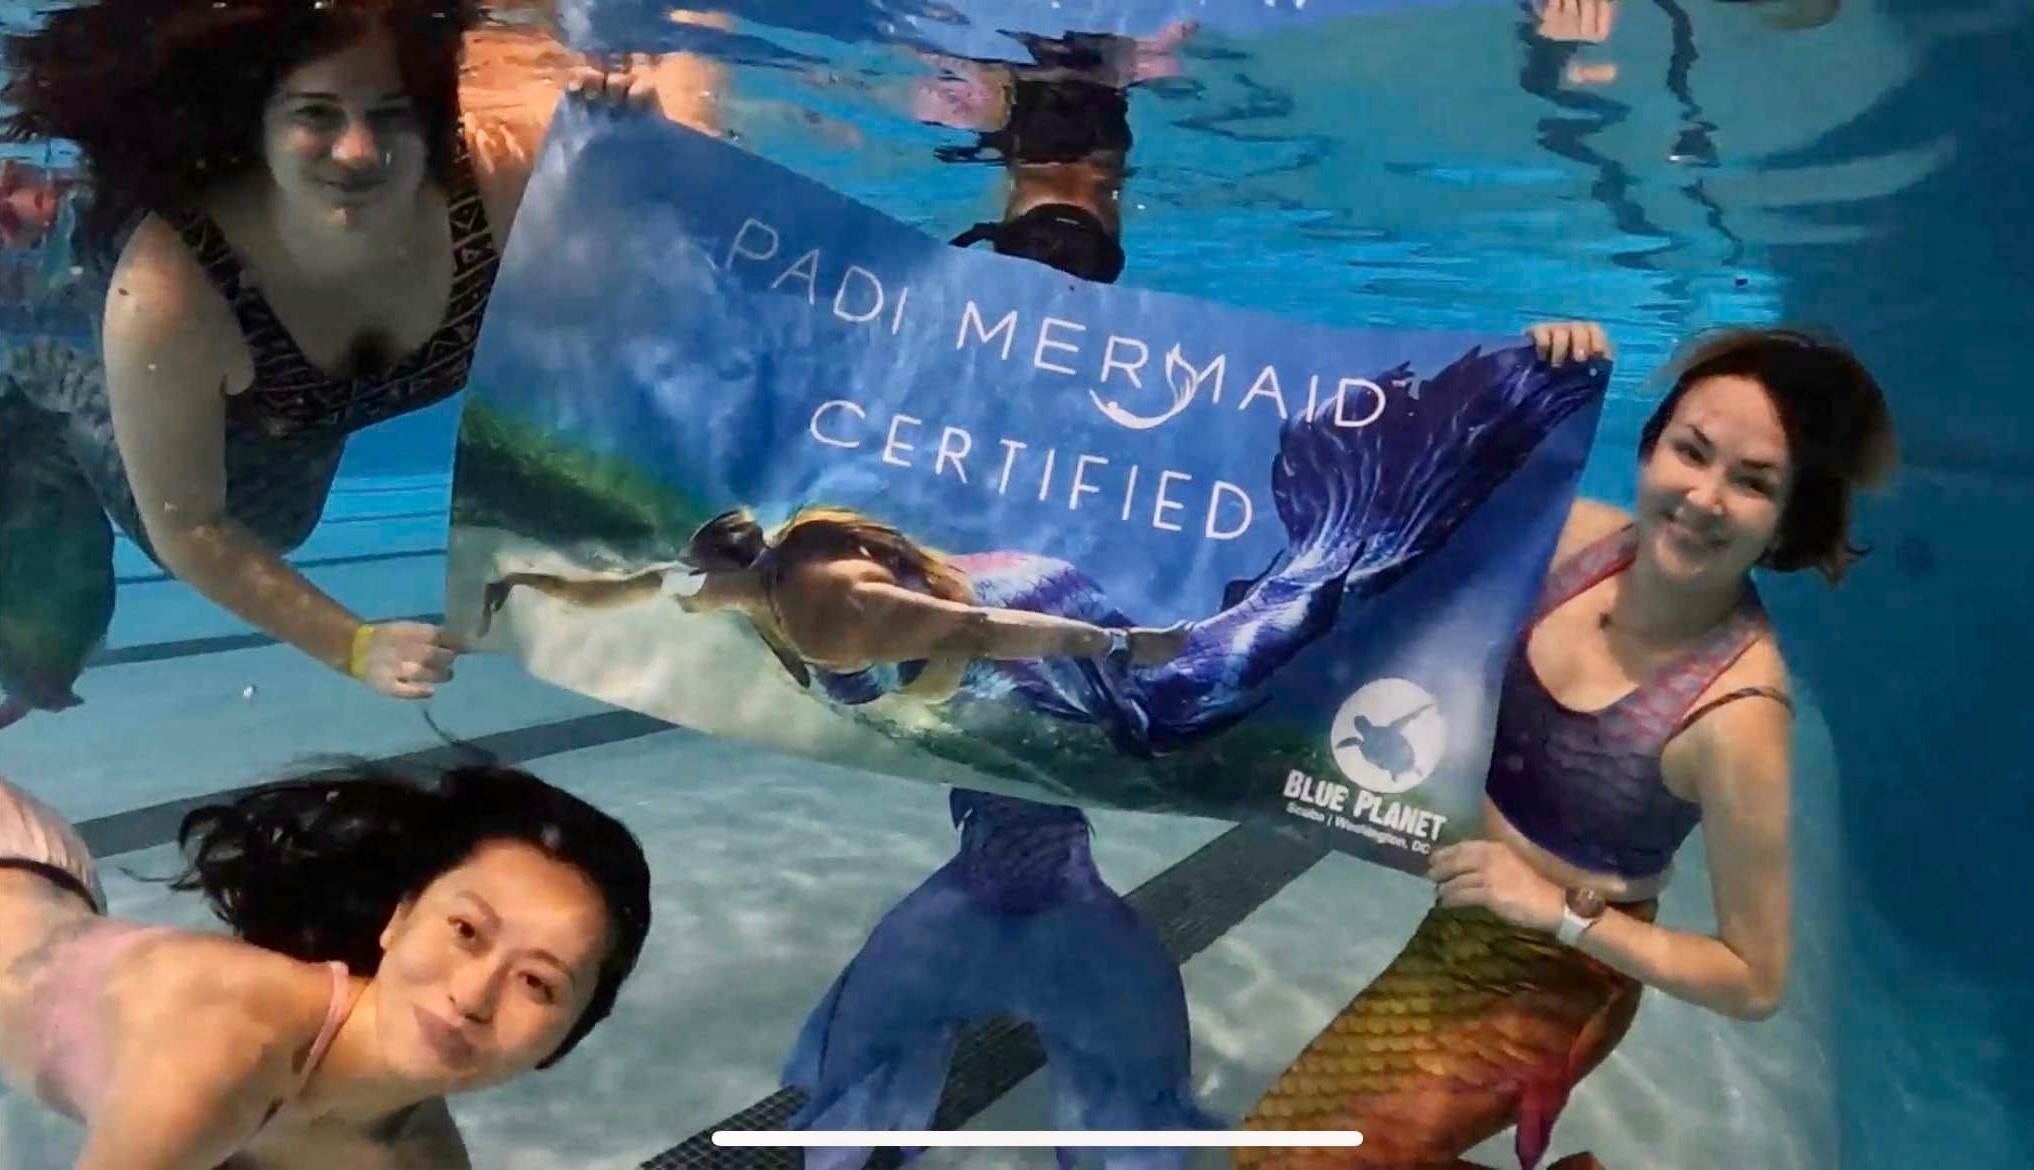 New PADI Mermaids celebrate in the pool